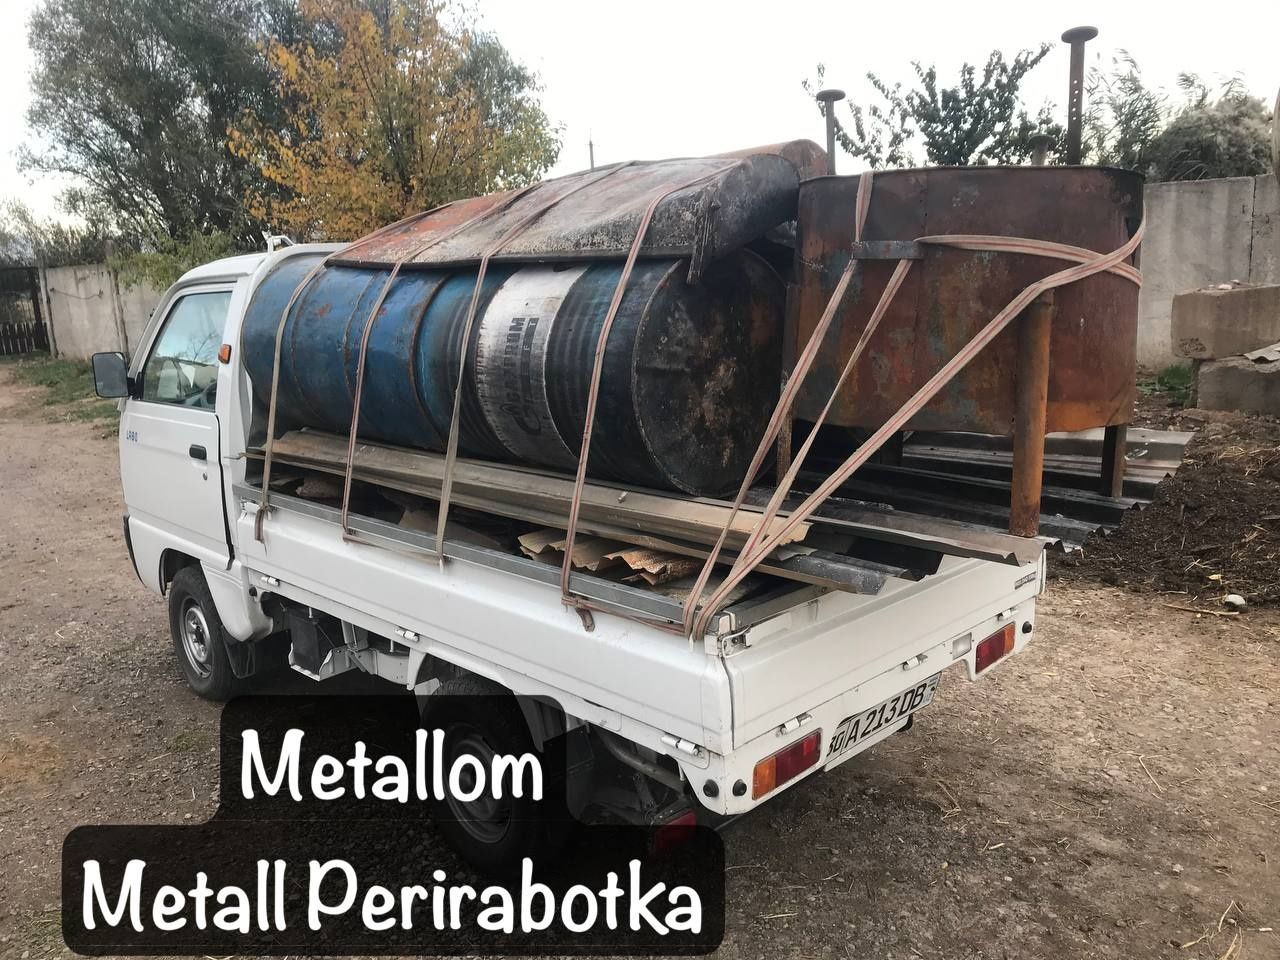 Метал,металлом переработка